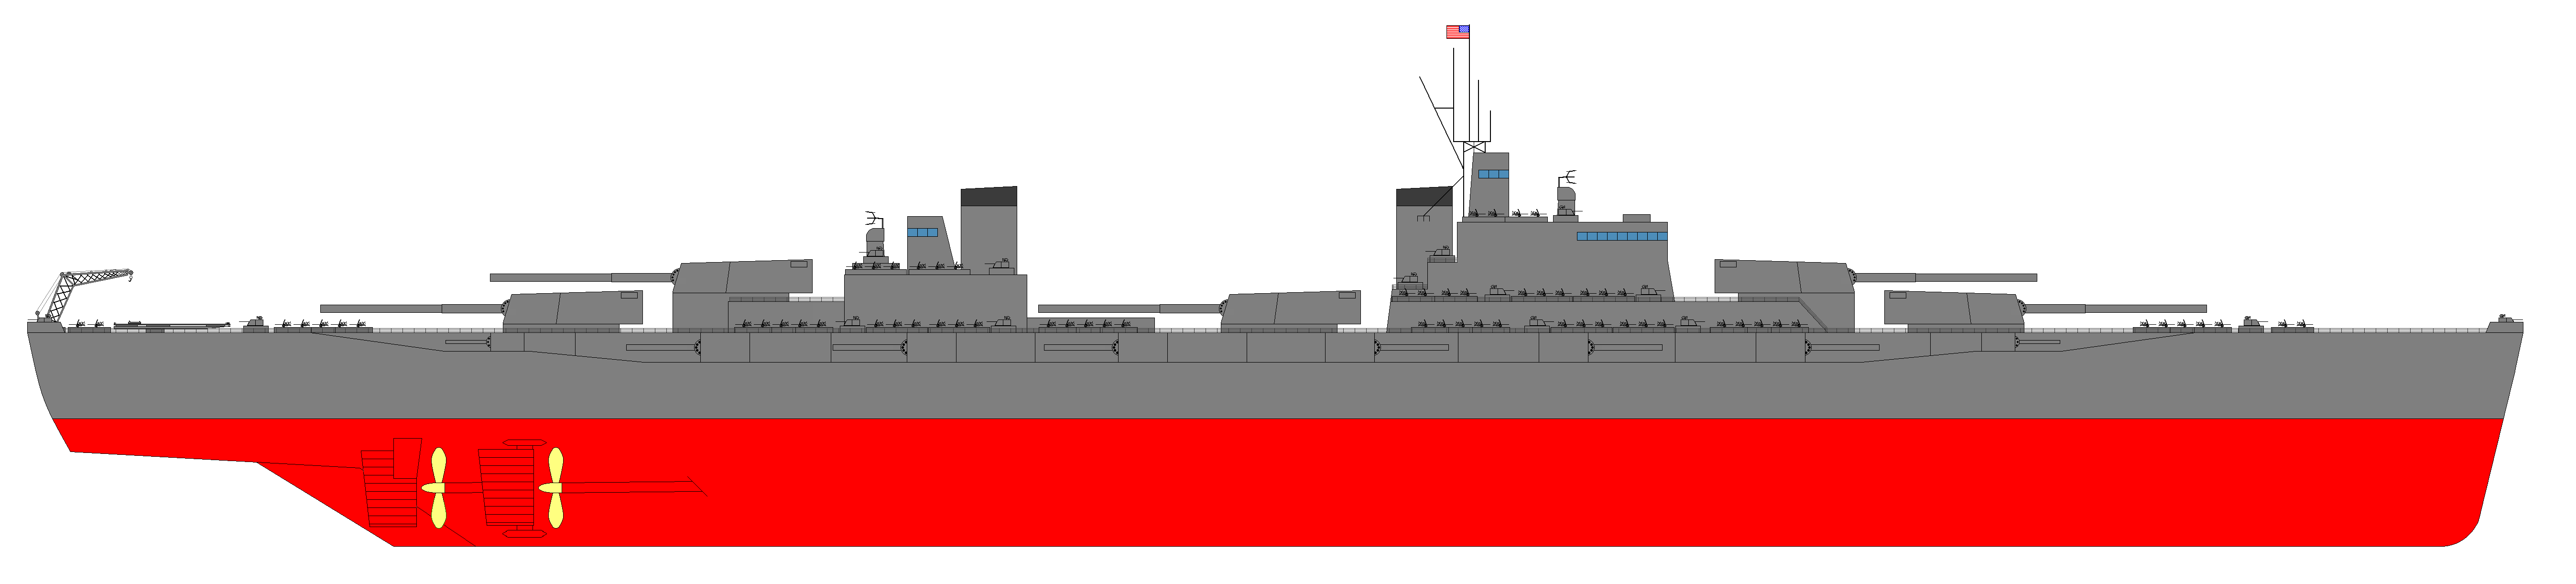 USS Arizona BBM-2.png